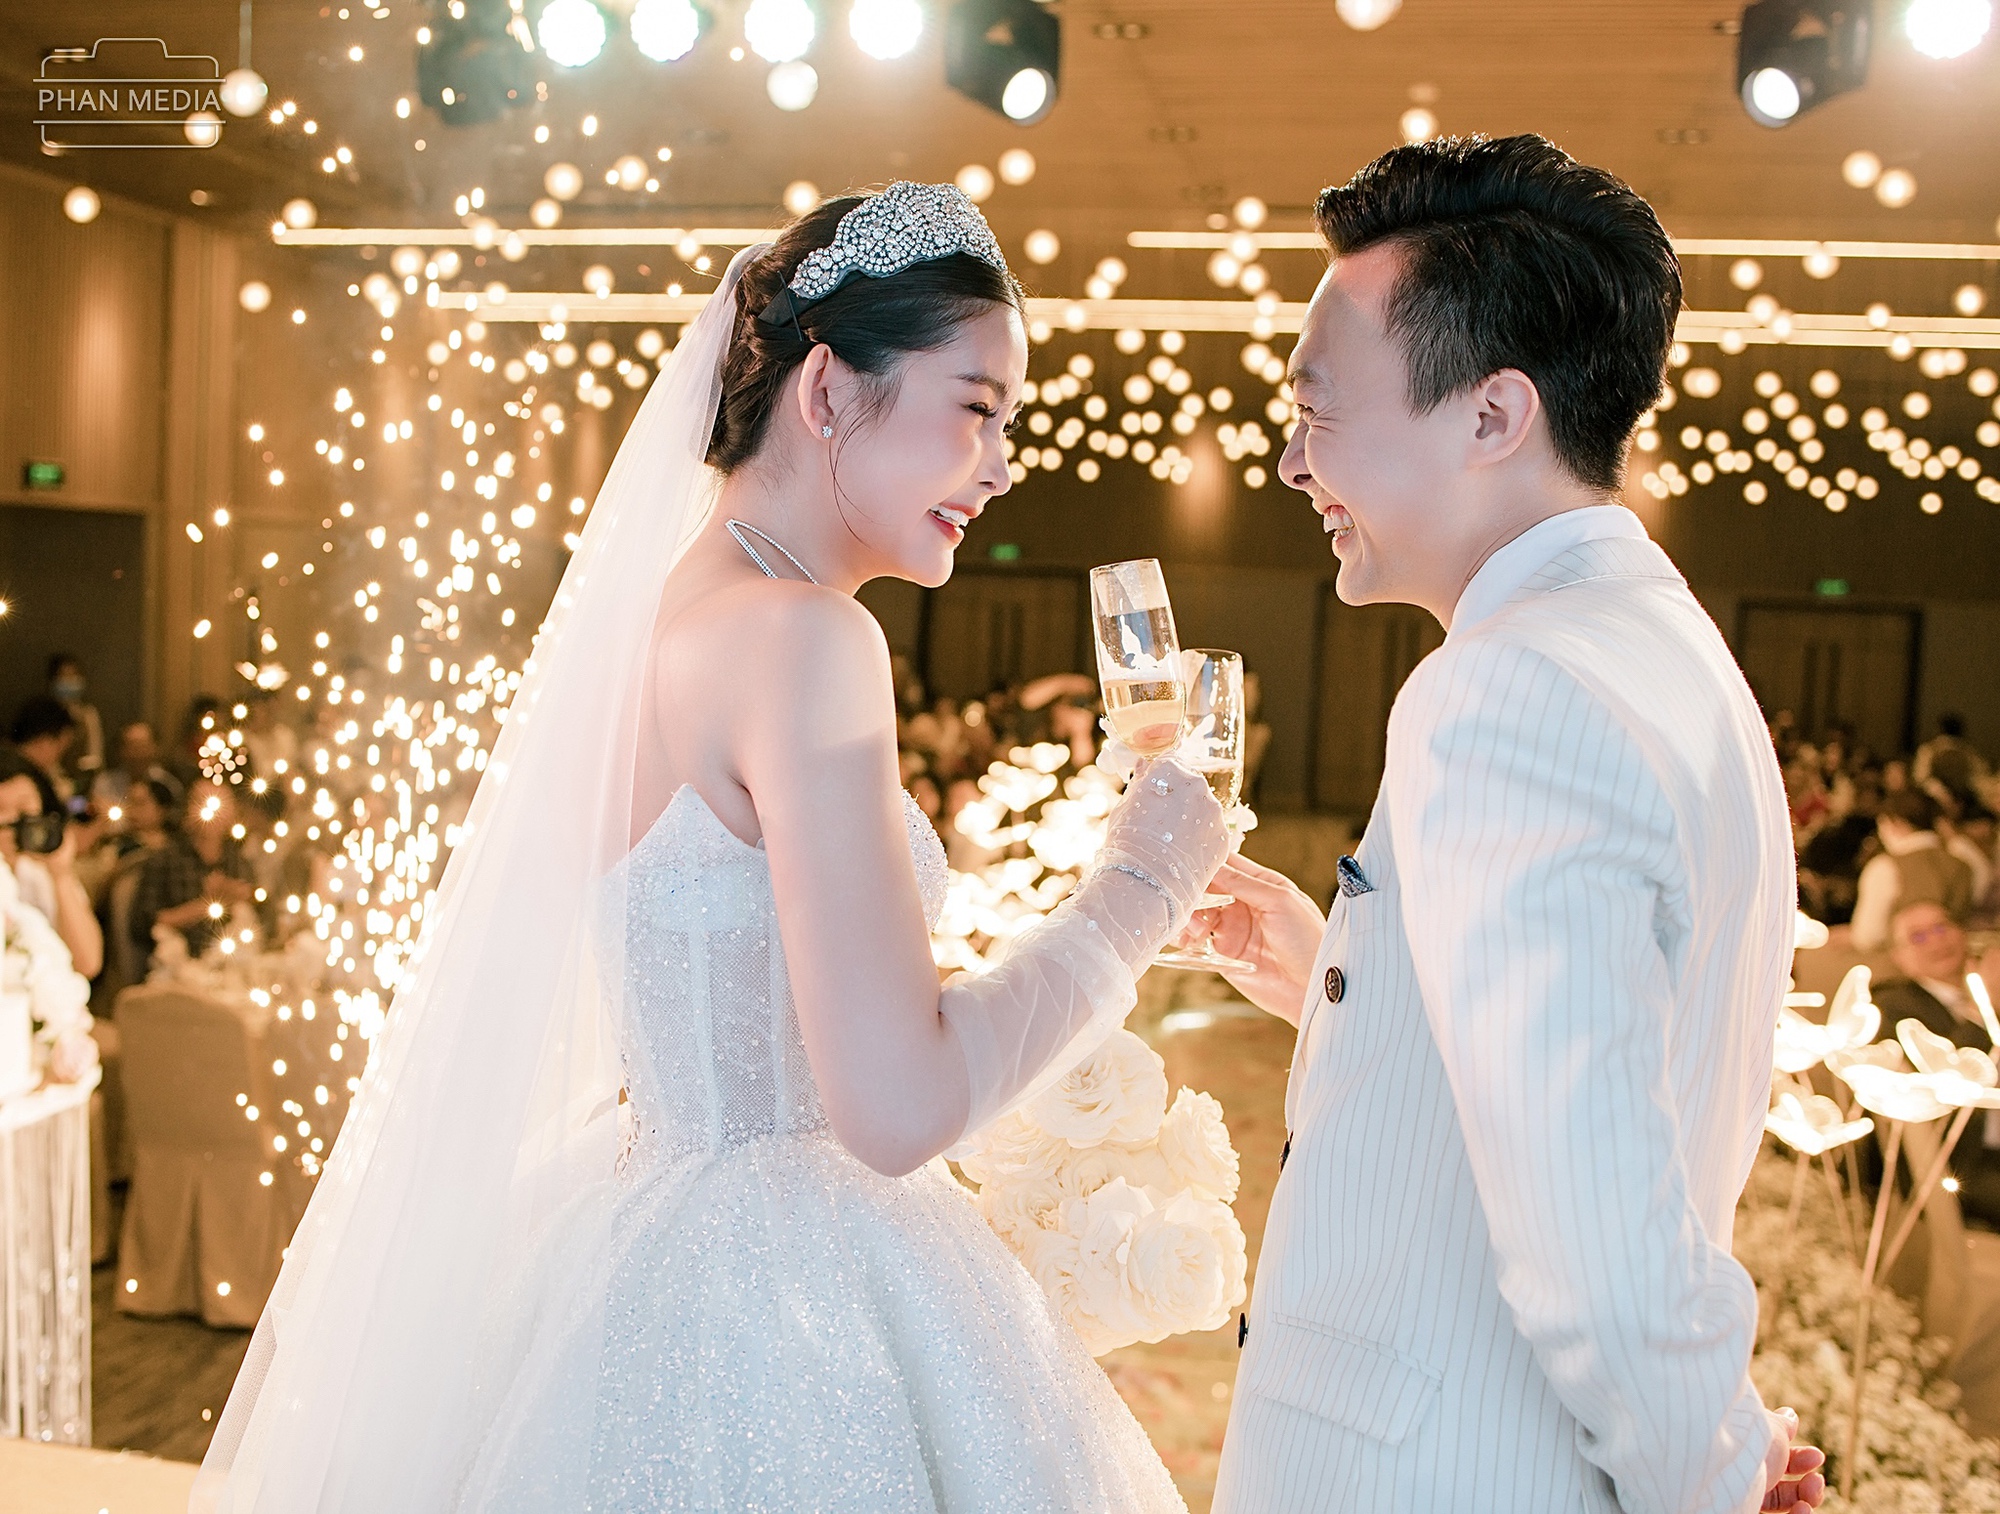 Ngân Anh khoe nhan sắc ngọt ngào, khiêu vũ cùng chồng biên tập viên trong đám cưới ở Quy Nhơn   - Ảnh 8.